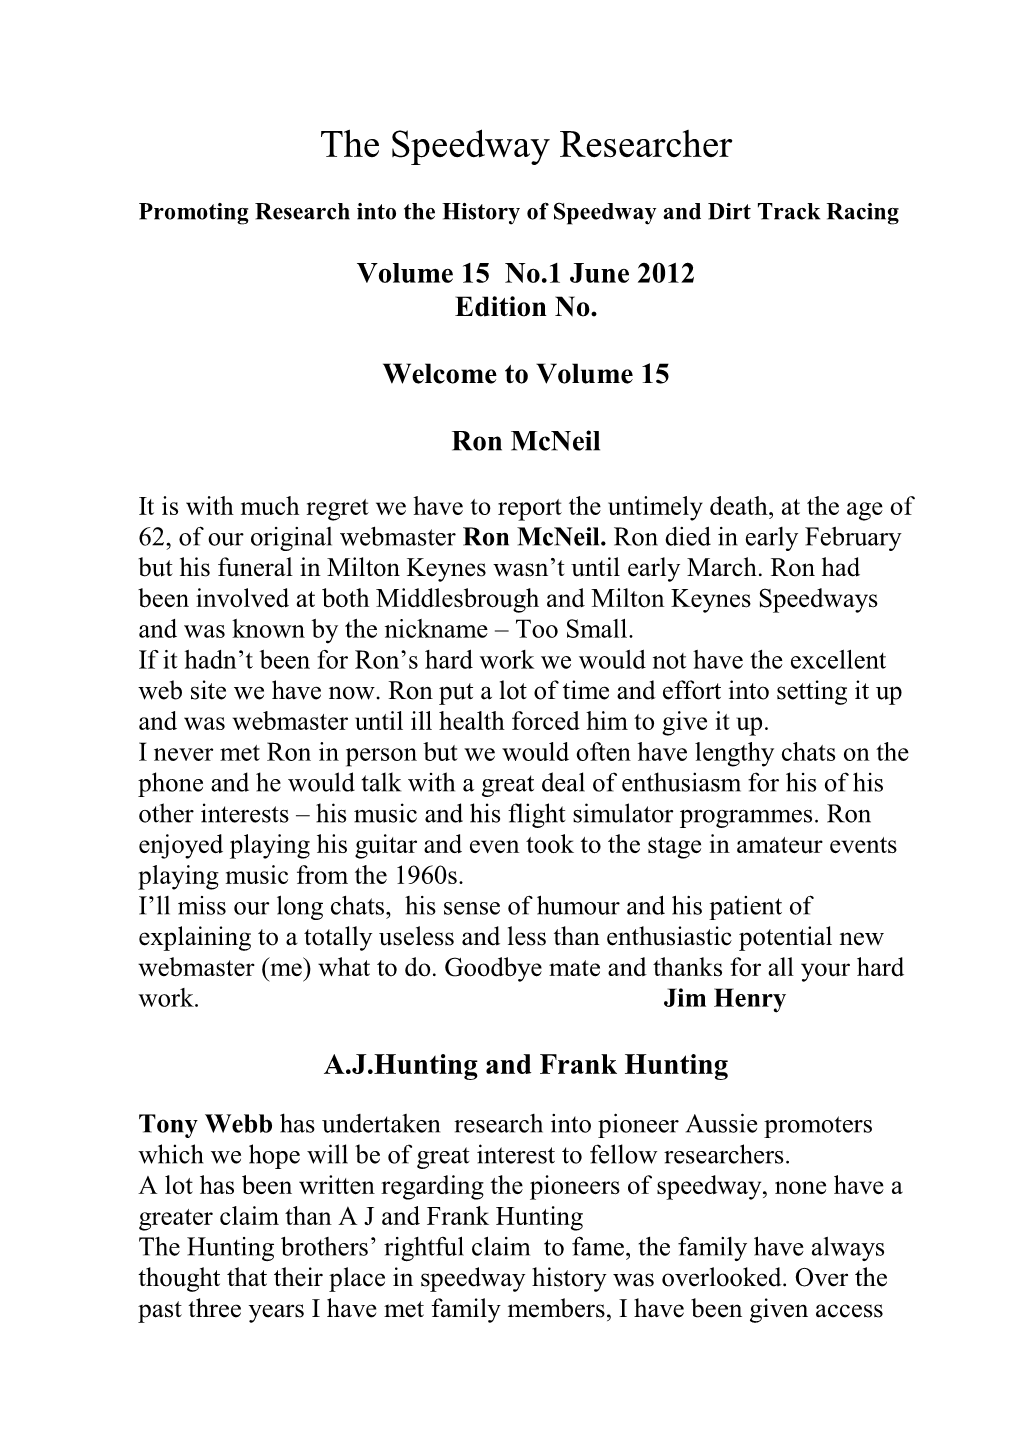 Volume 15 No.1 June 2012 Edition No